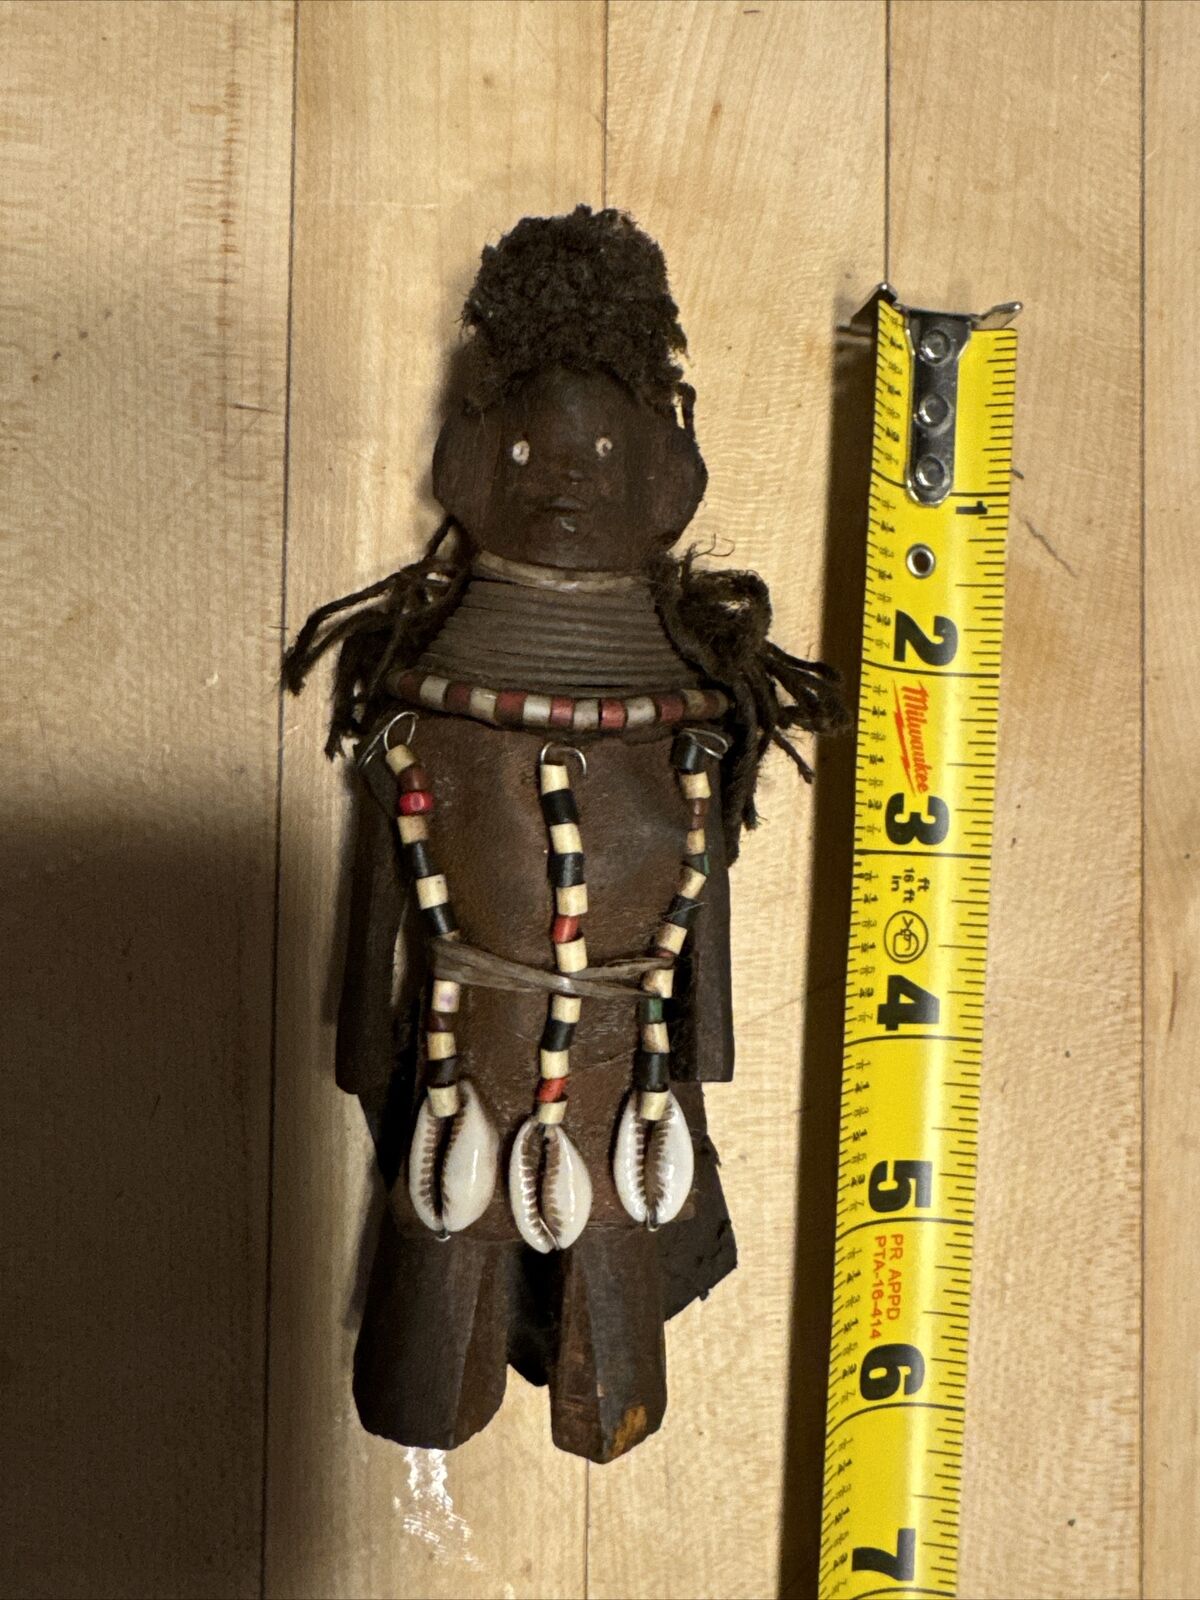 Namji Turkana Dinka Doll Fertility Love Figure Carved Wood Beads Shells Ndebele